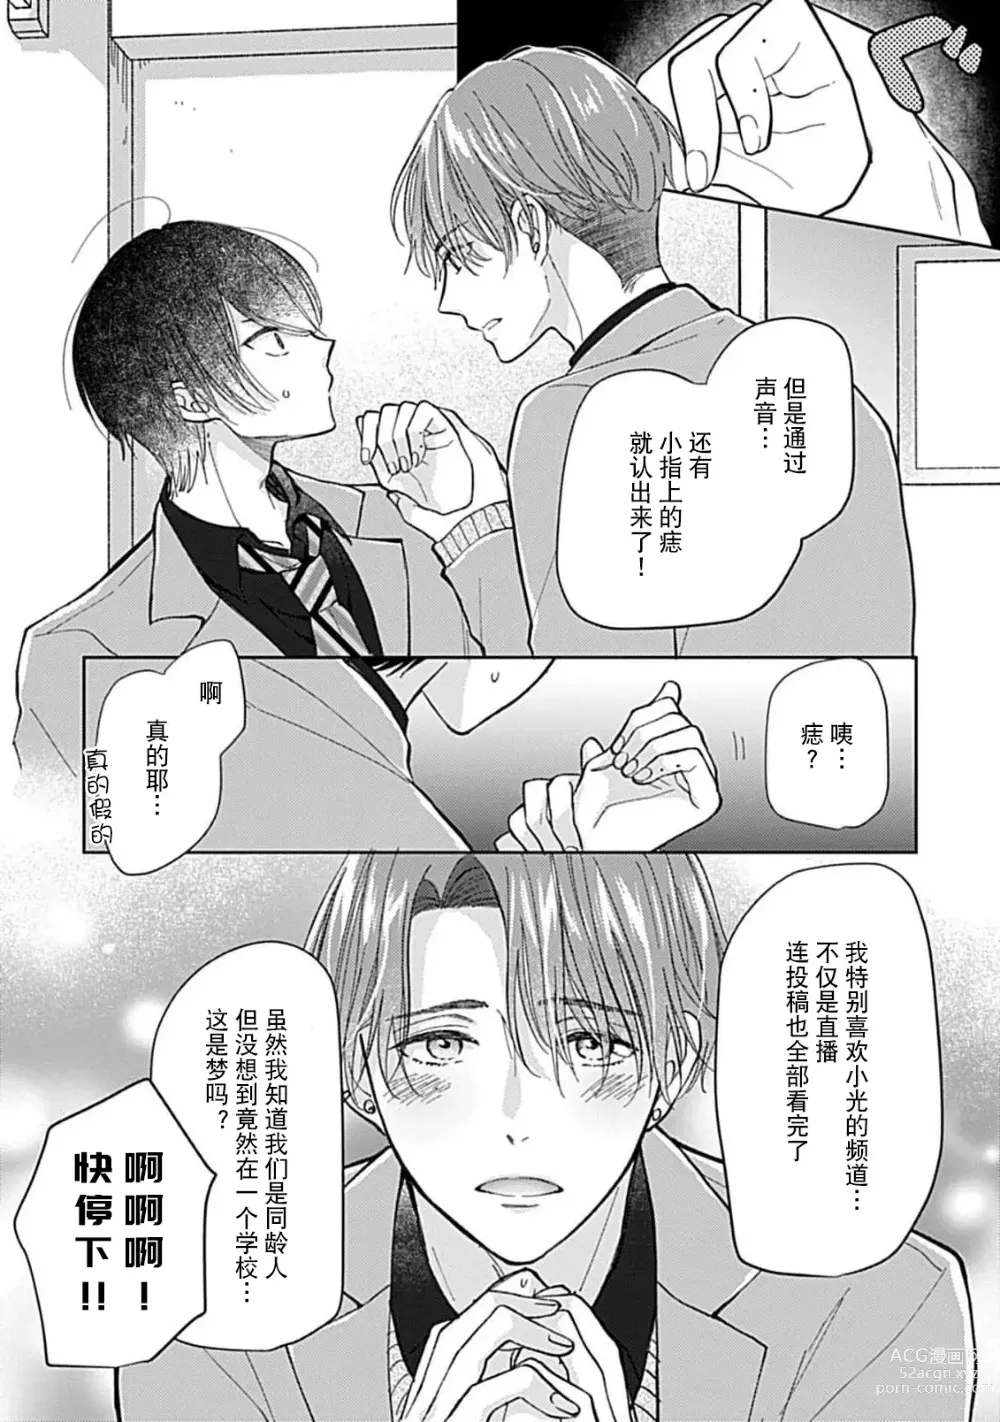 Page 21 of manga 恋情与秘密难以映照 1